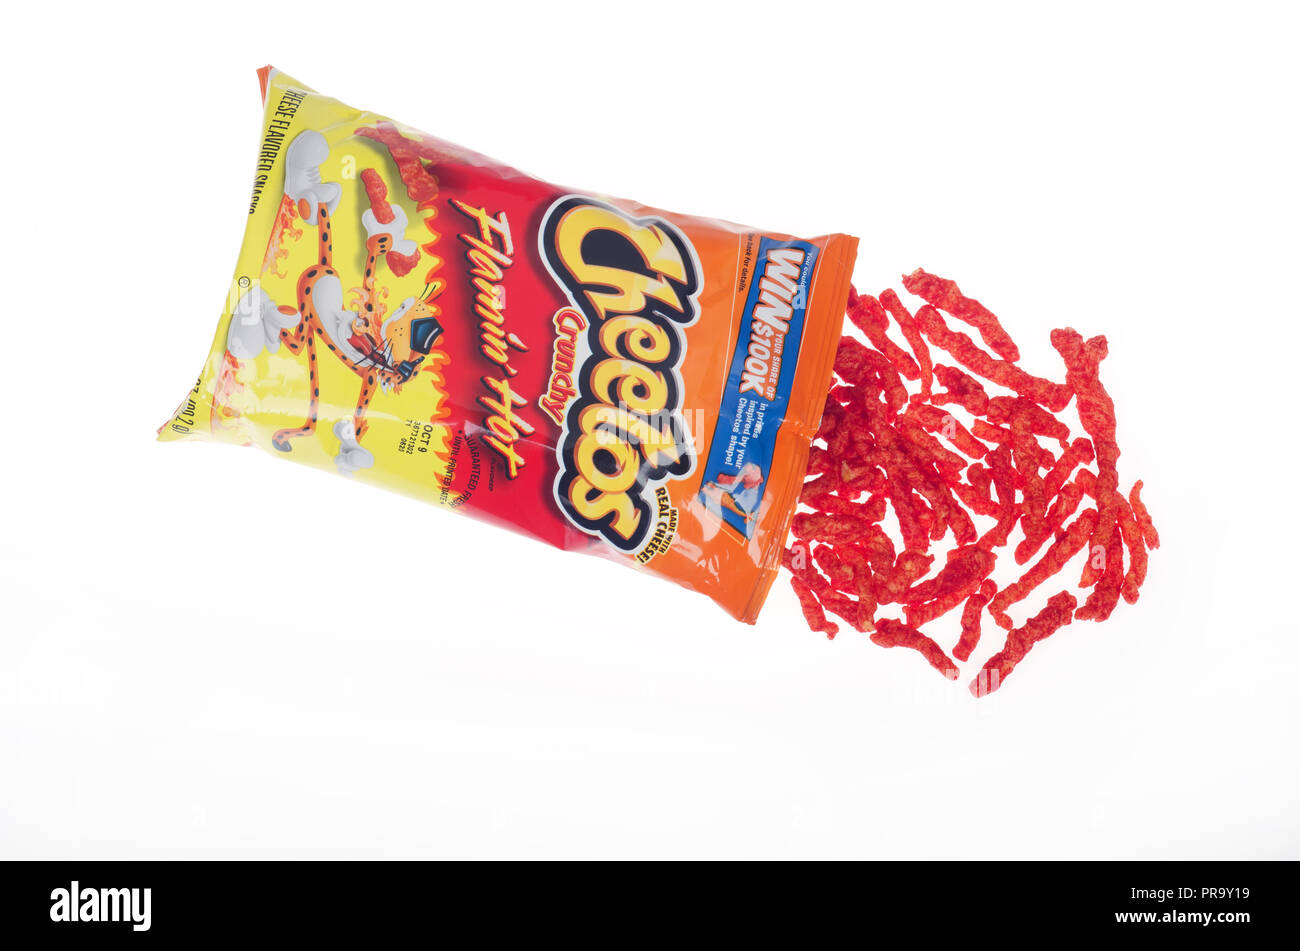 Sac ouvert de Cheetos Crunchy Flamin' en-cas chauds avec un peu de déverser sur fond blanc Banque D'Images